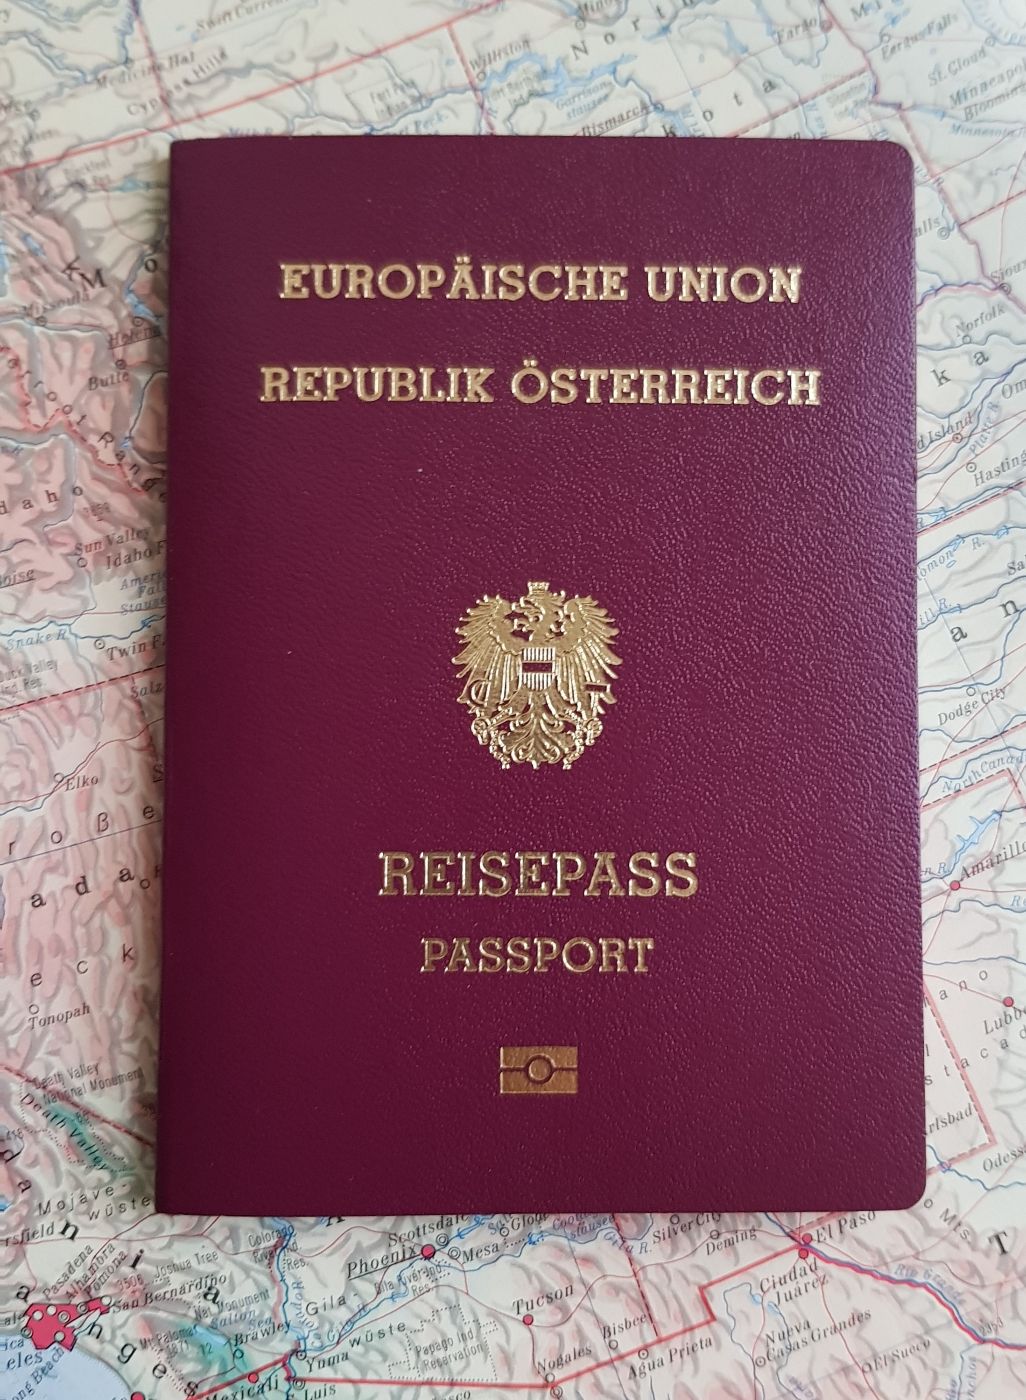 Abbildung des österreichischen Reisepasses. Der Reisepass liegt auf einer Landkarte. Der österreichische Reisepass ist bordeauxrot, in der Mitte ist das österreichische Bundeswappen in gold aufgedruckt, die Schrift ist ebenfalls in gold. Der Reisepass ist circa 100 mm breit und circa 160 mm hoch.